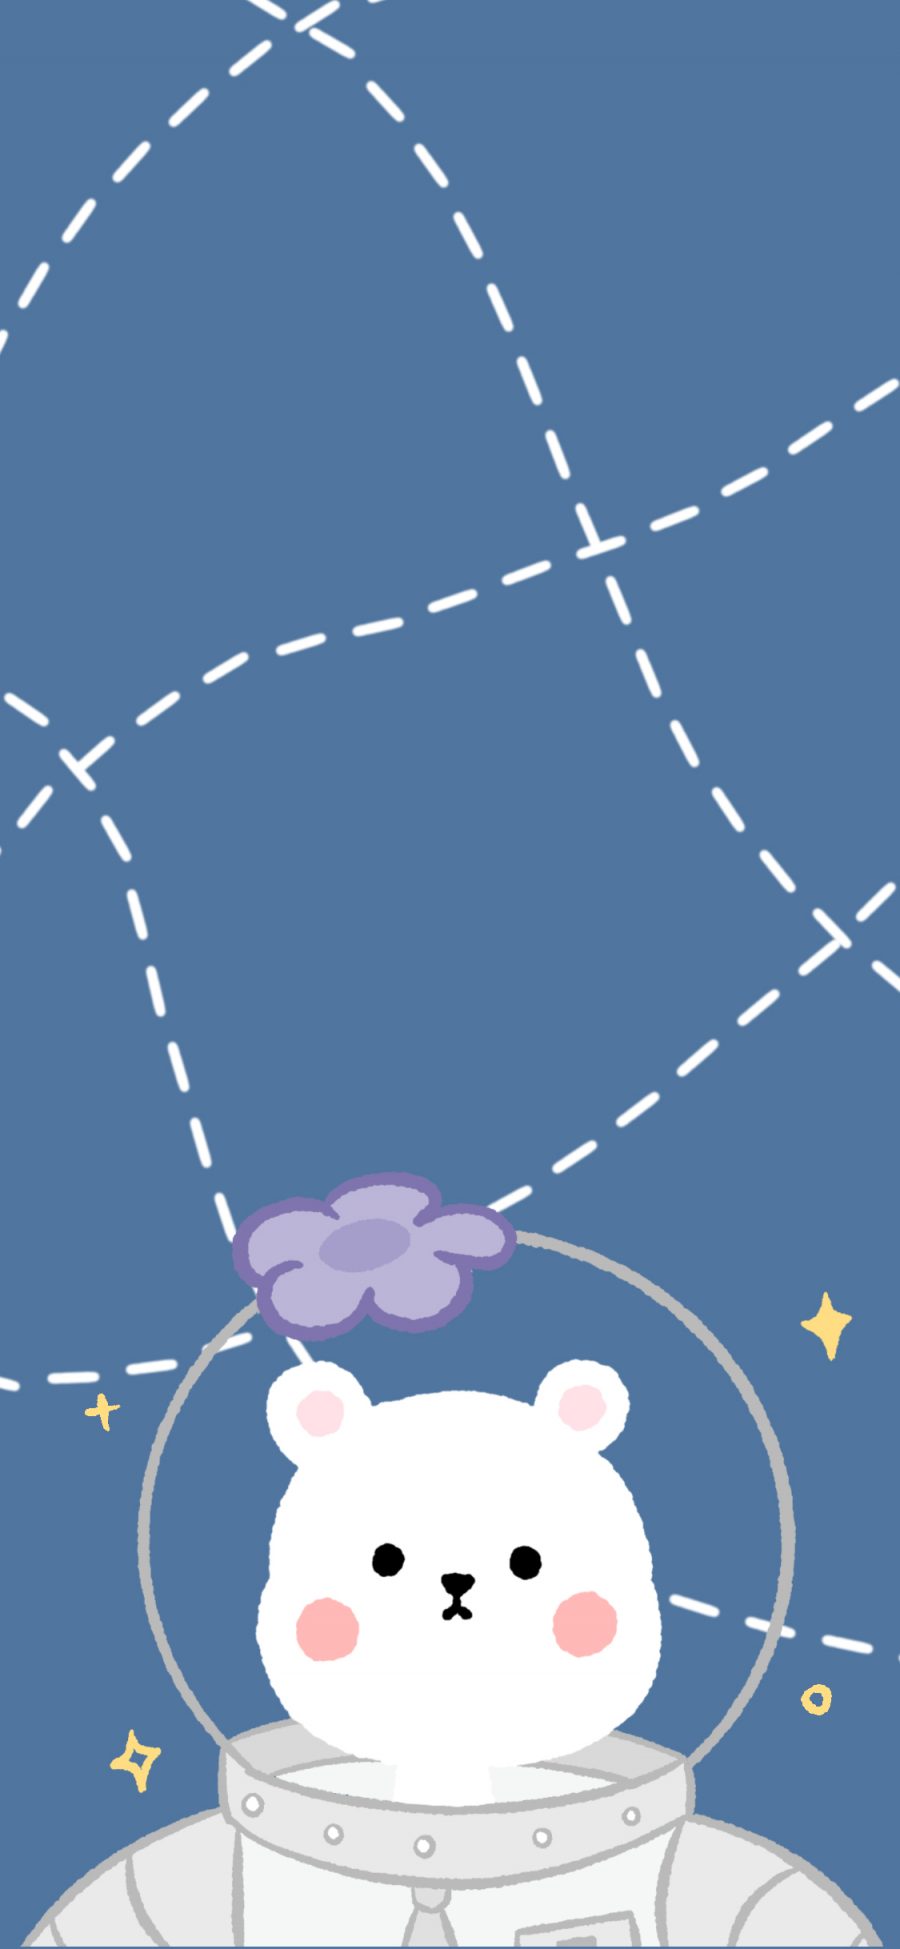 [2436×1125]兔子 宇航服 线条 可爱 苹果手机动漫壁纸图片